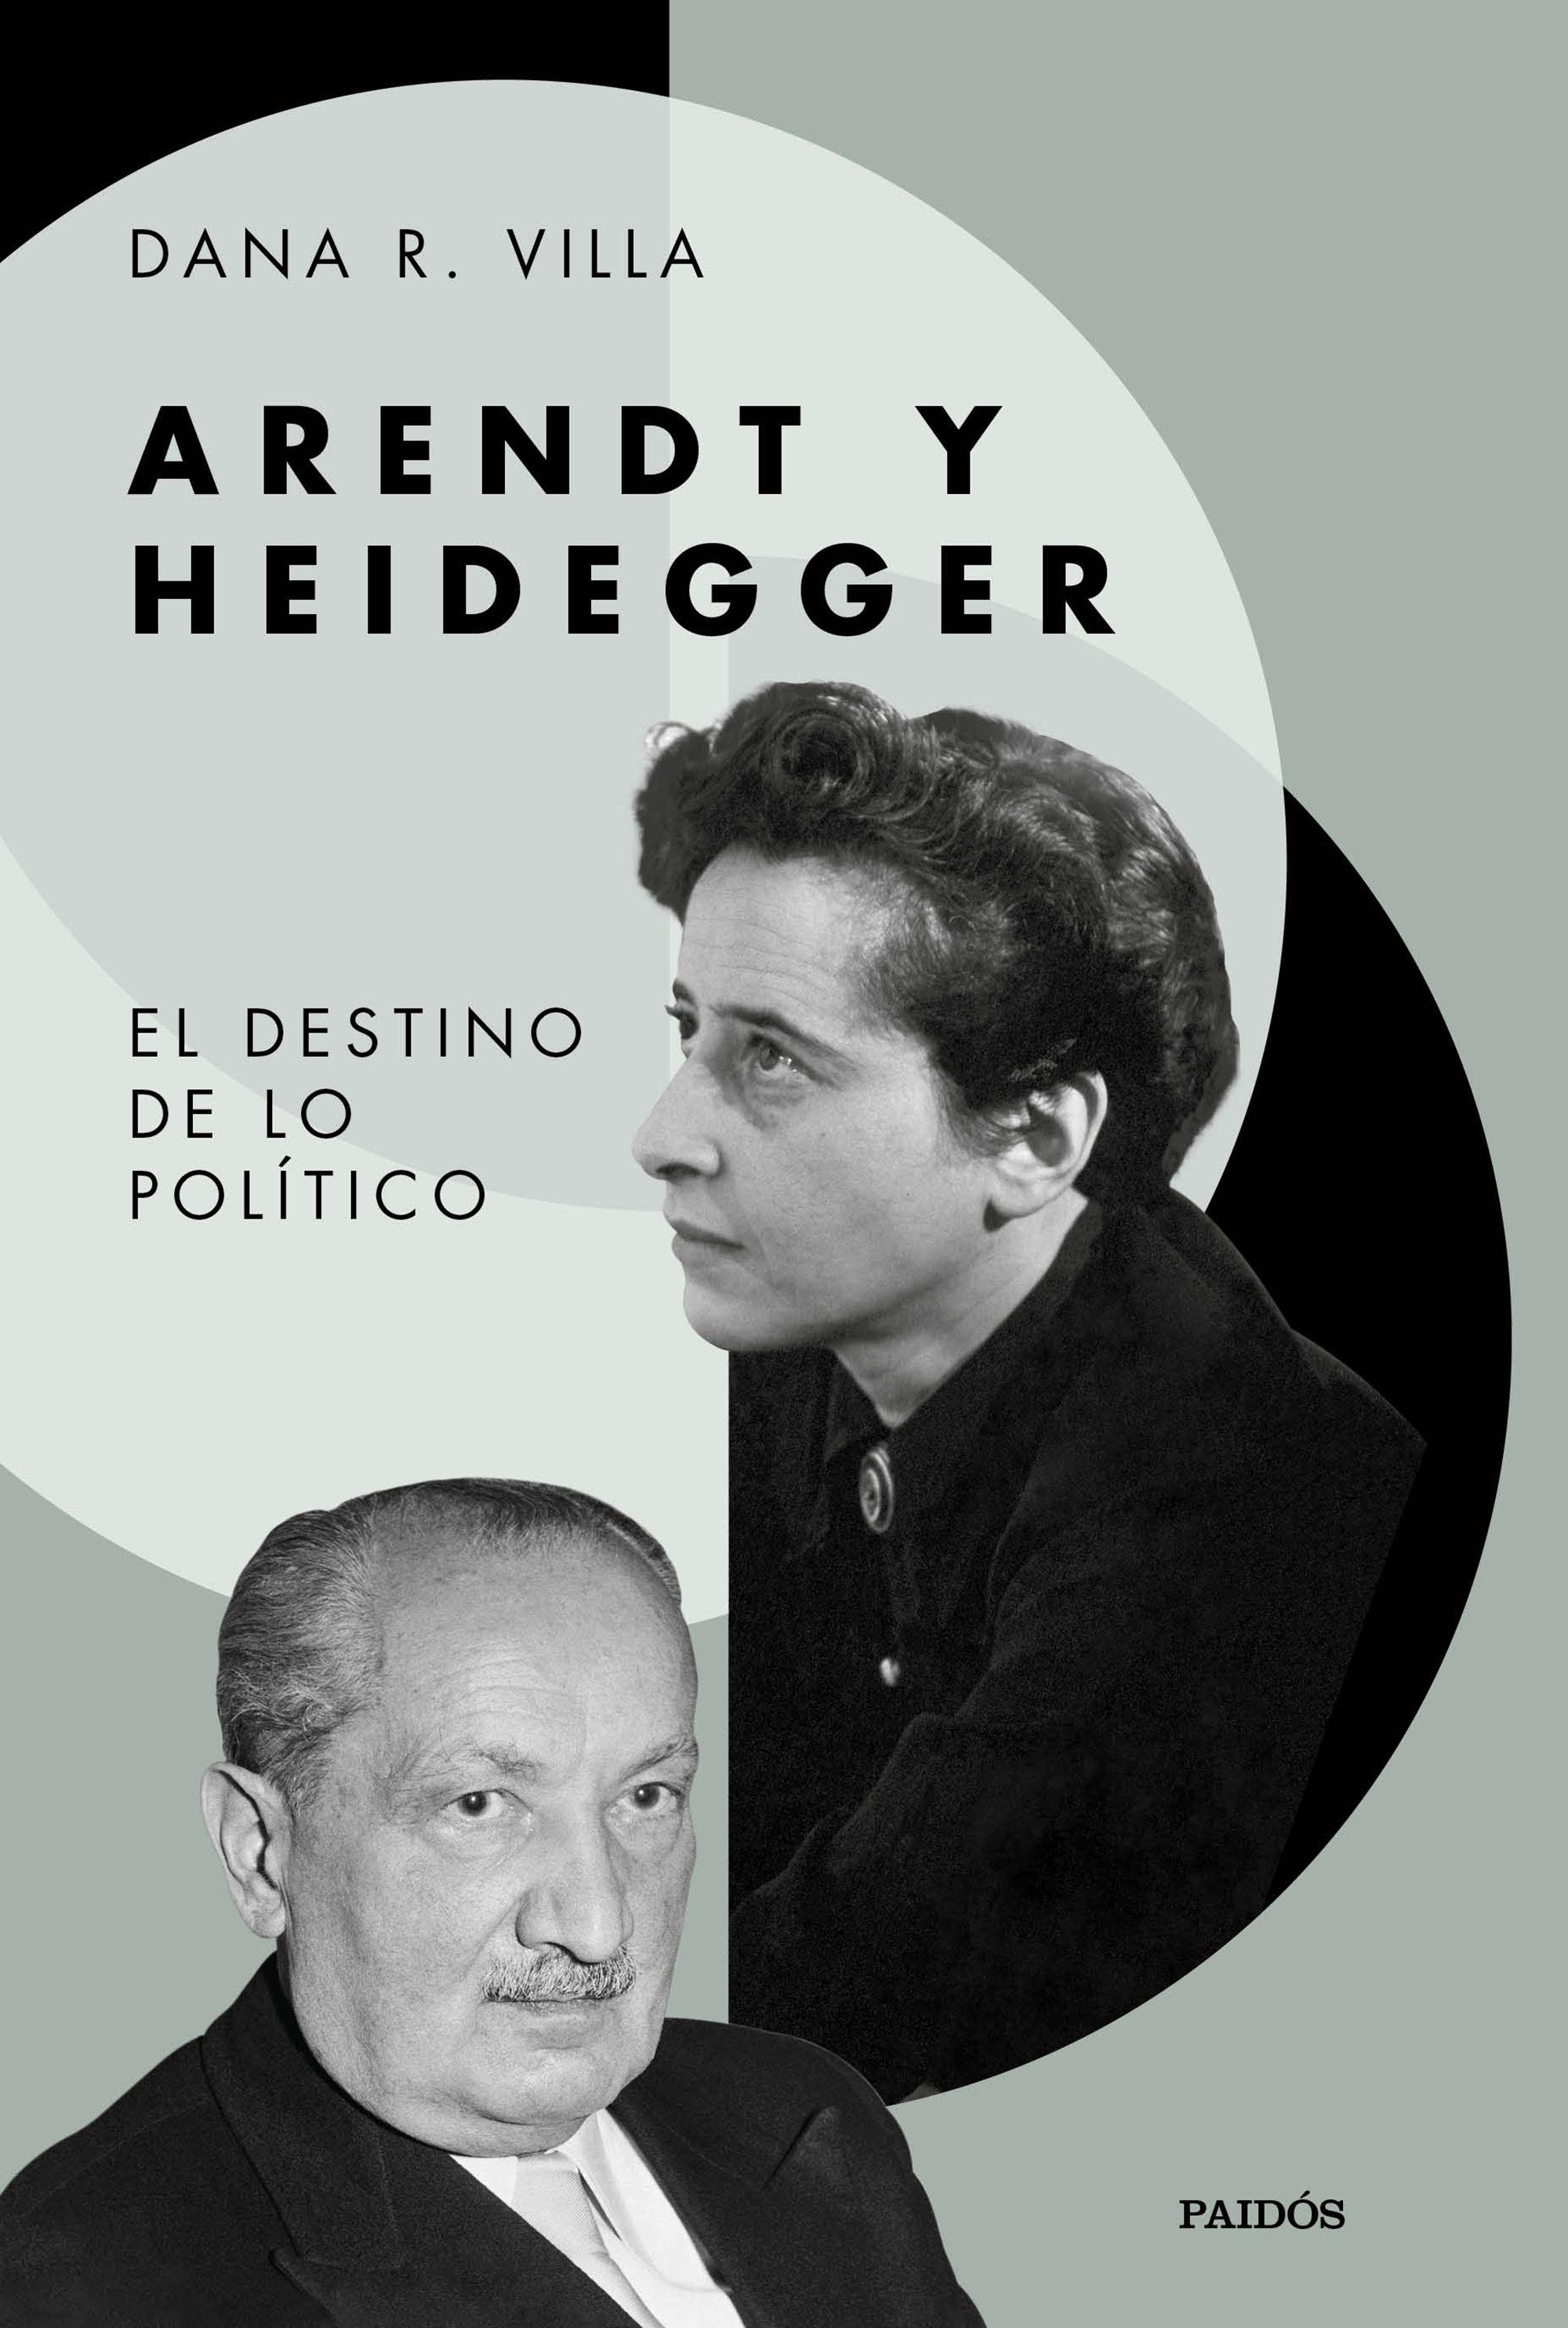 Arendt y Heidegger "El destino de lo politico". 